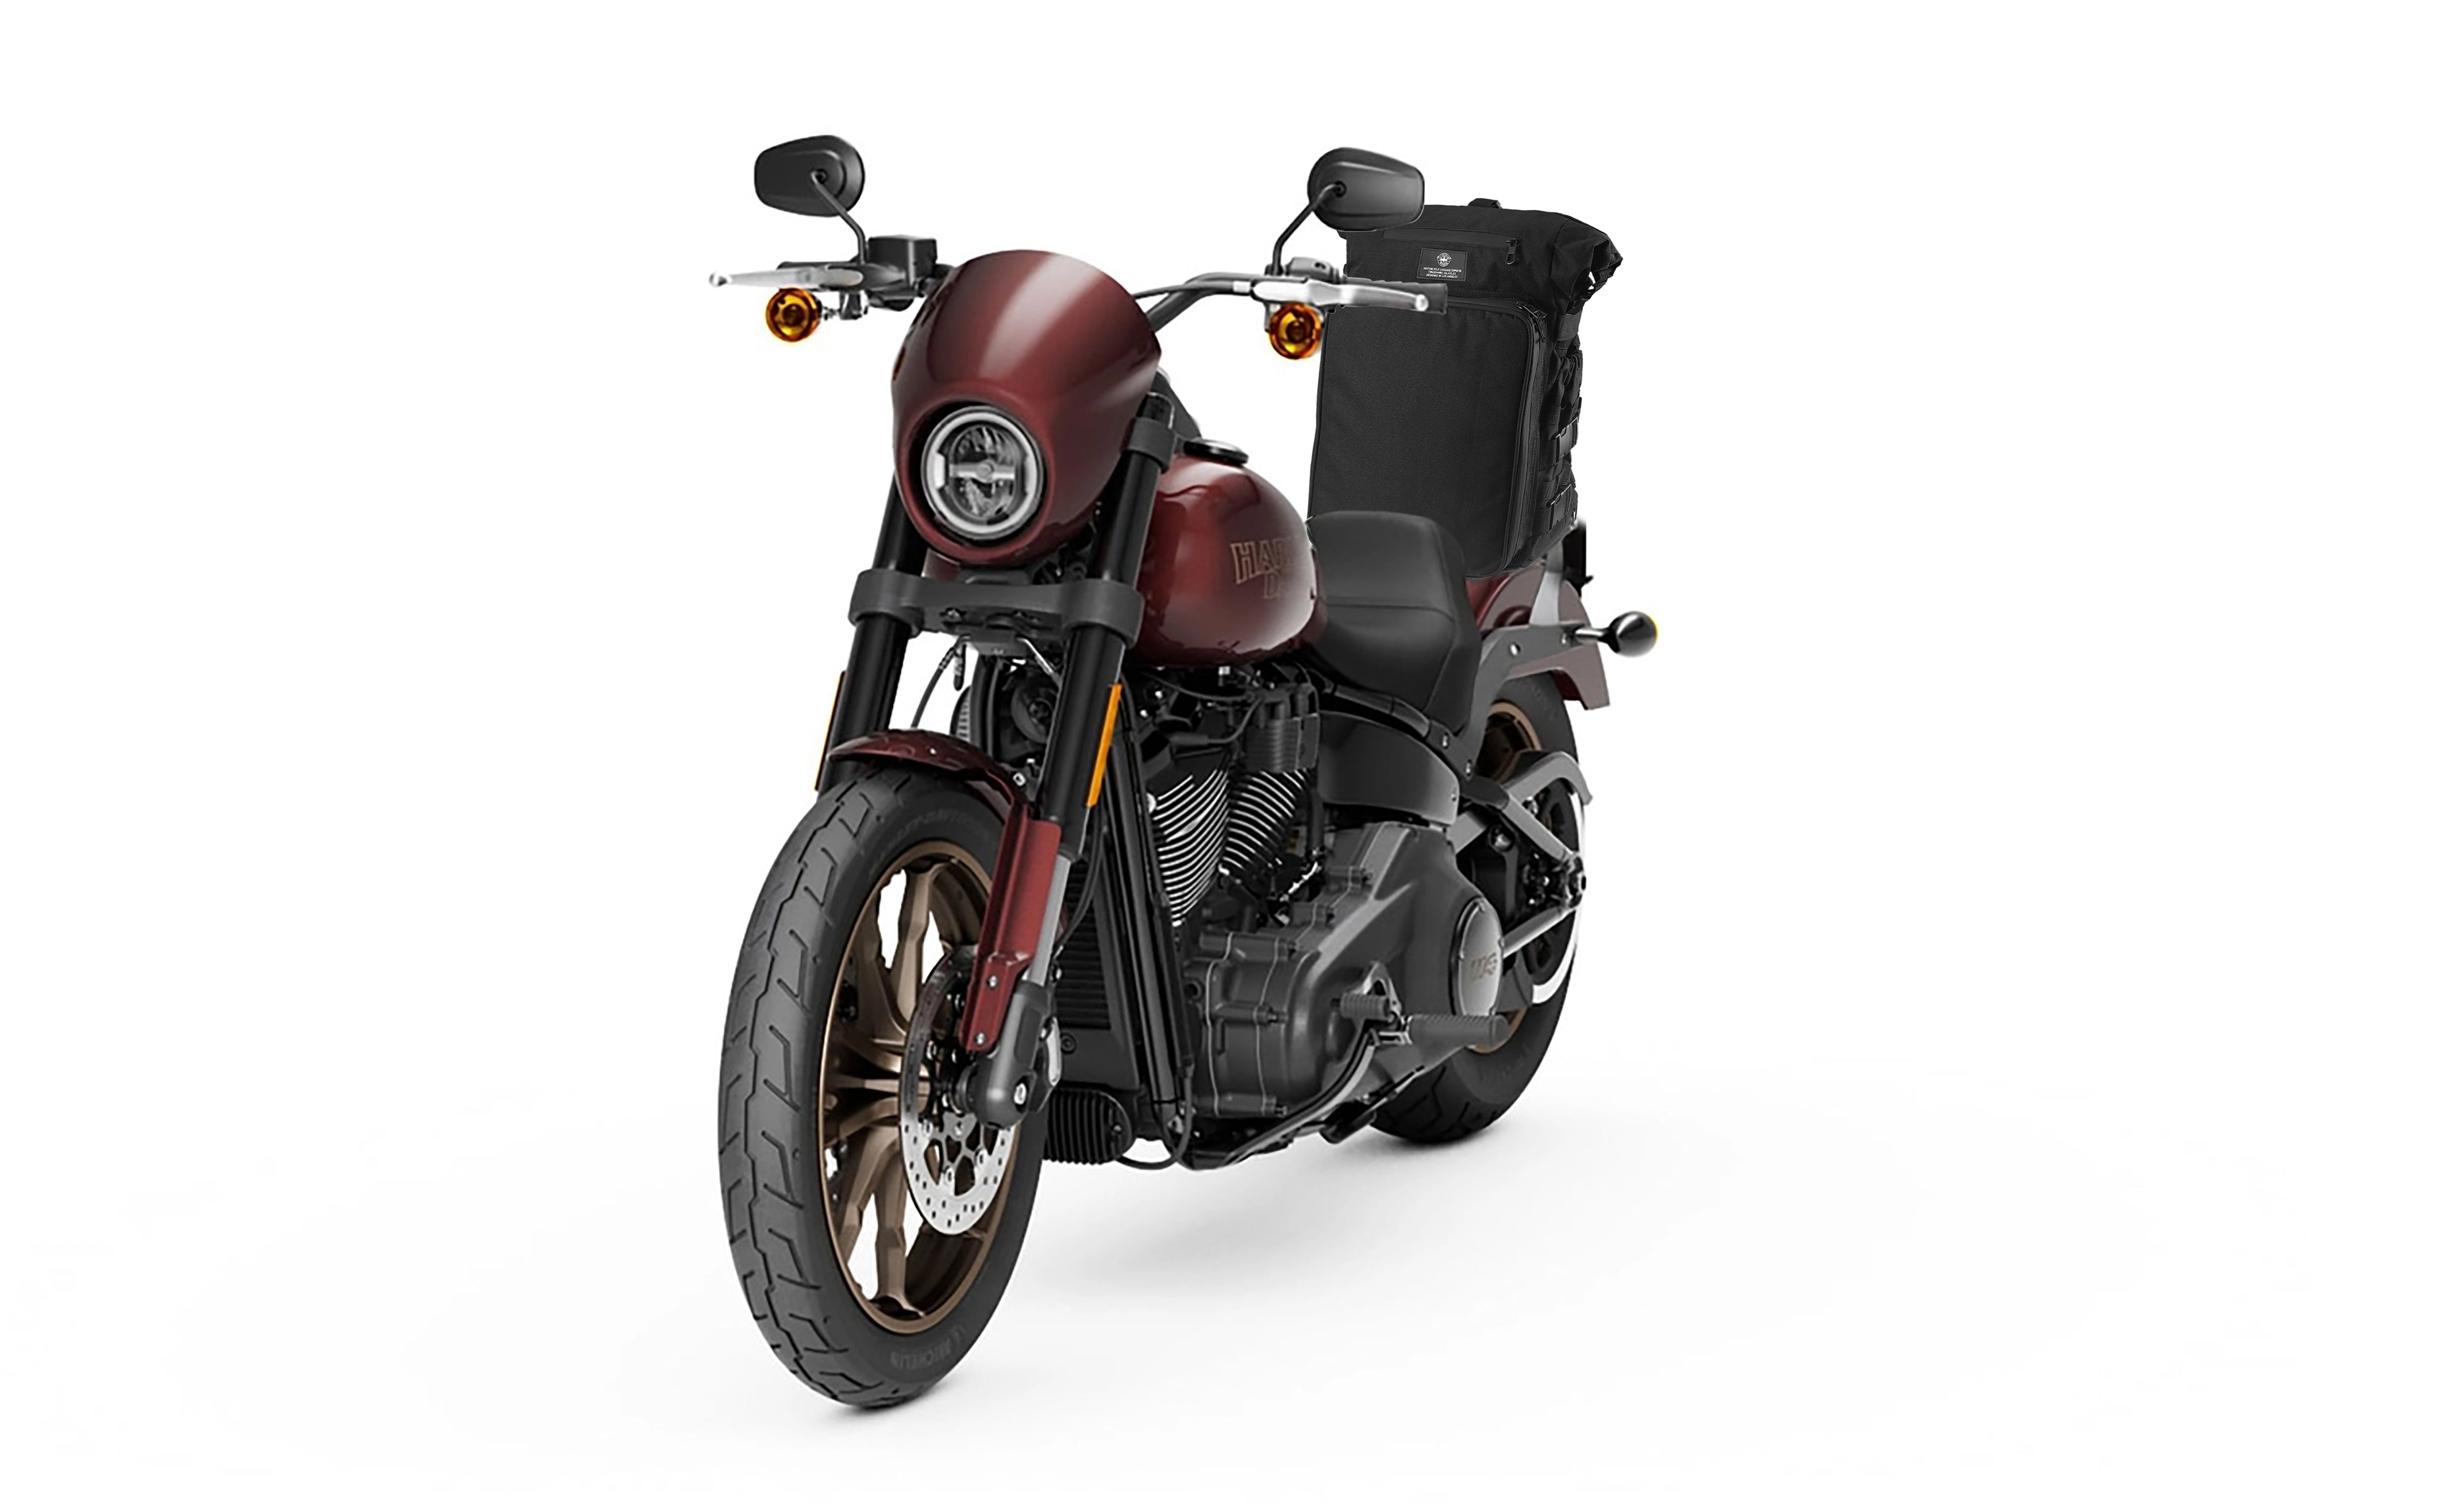 Viking Renegade XL Honda Motorcycle Tail Bag Bag on Bike View @expand